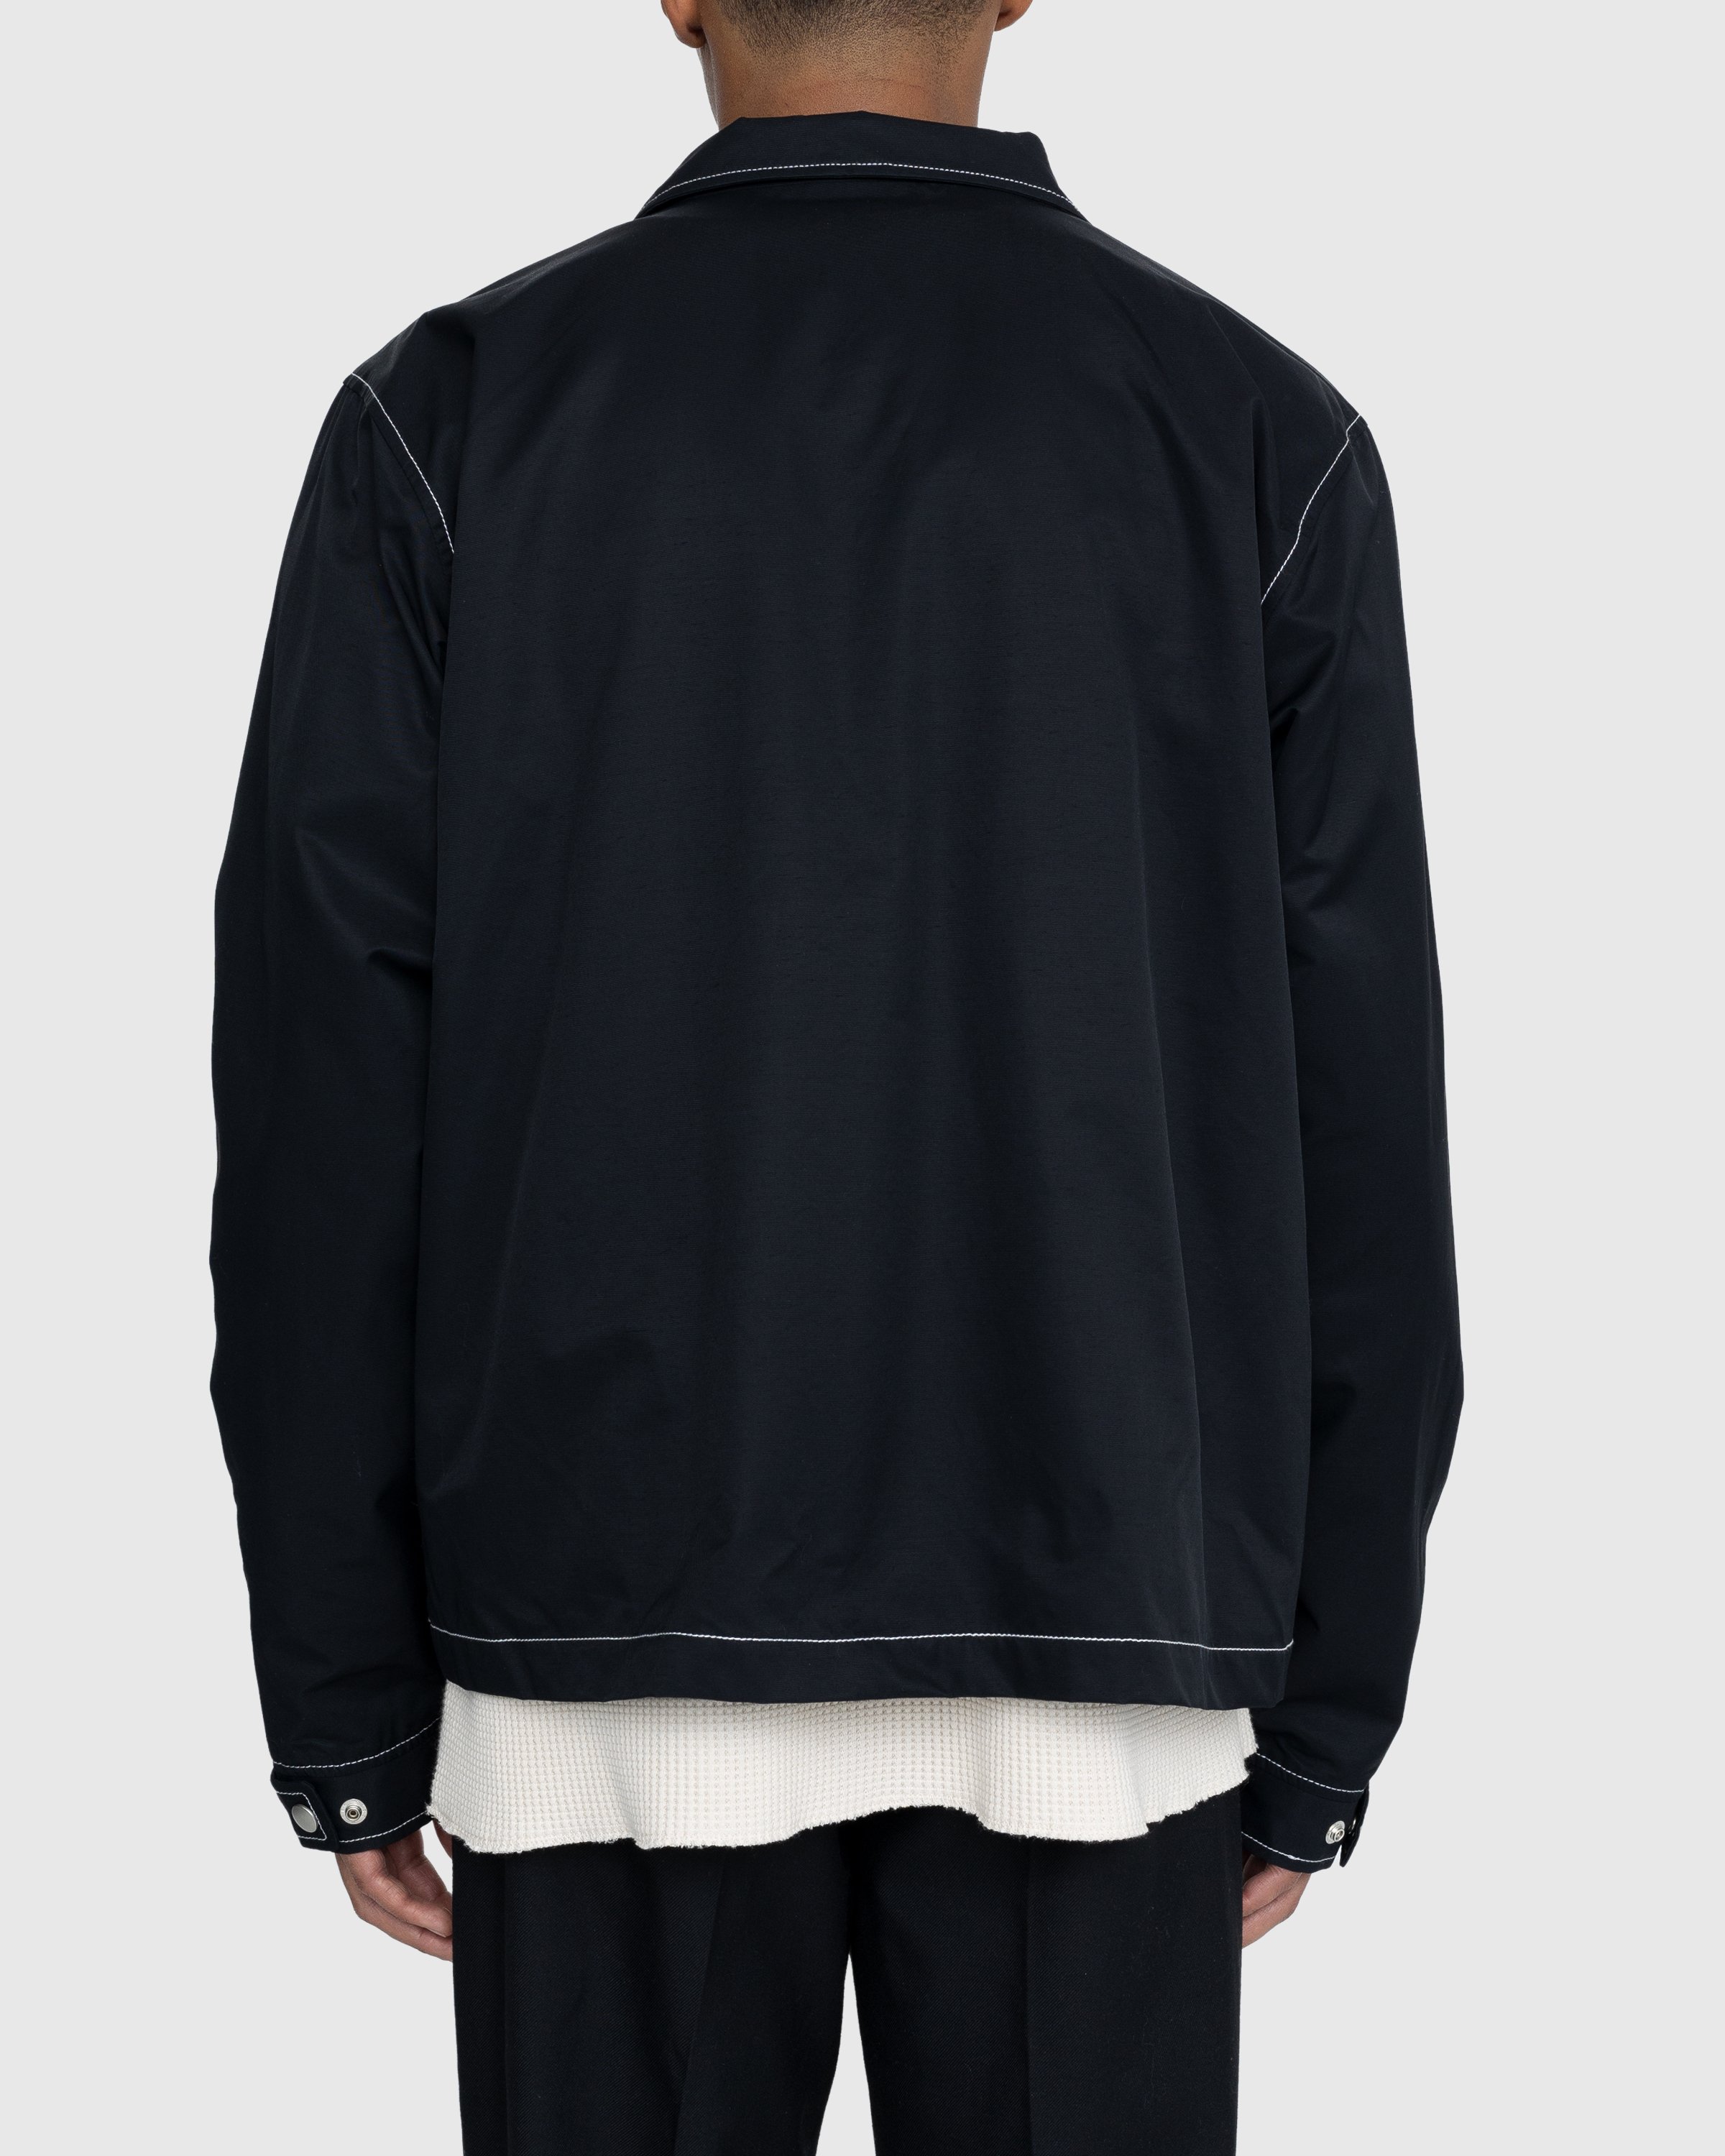 Highsnobiety - Brushed Nylon Jacket Black - Clothing - Black - Image 4